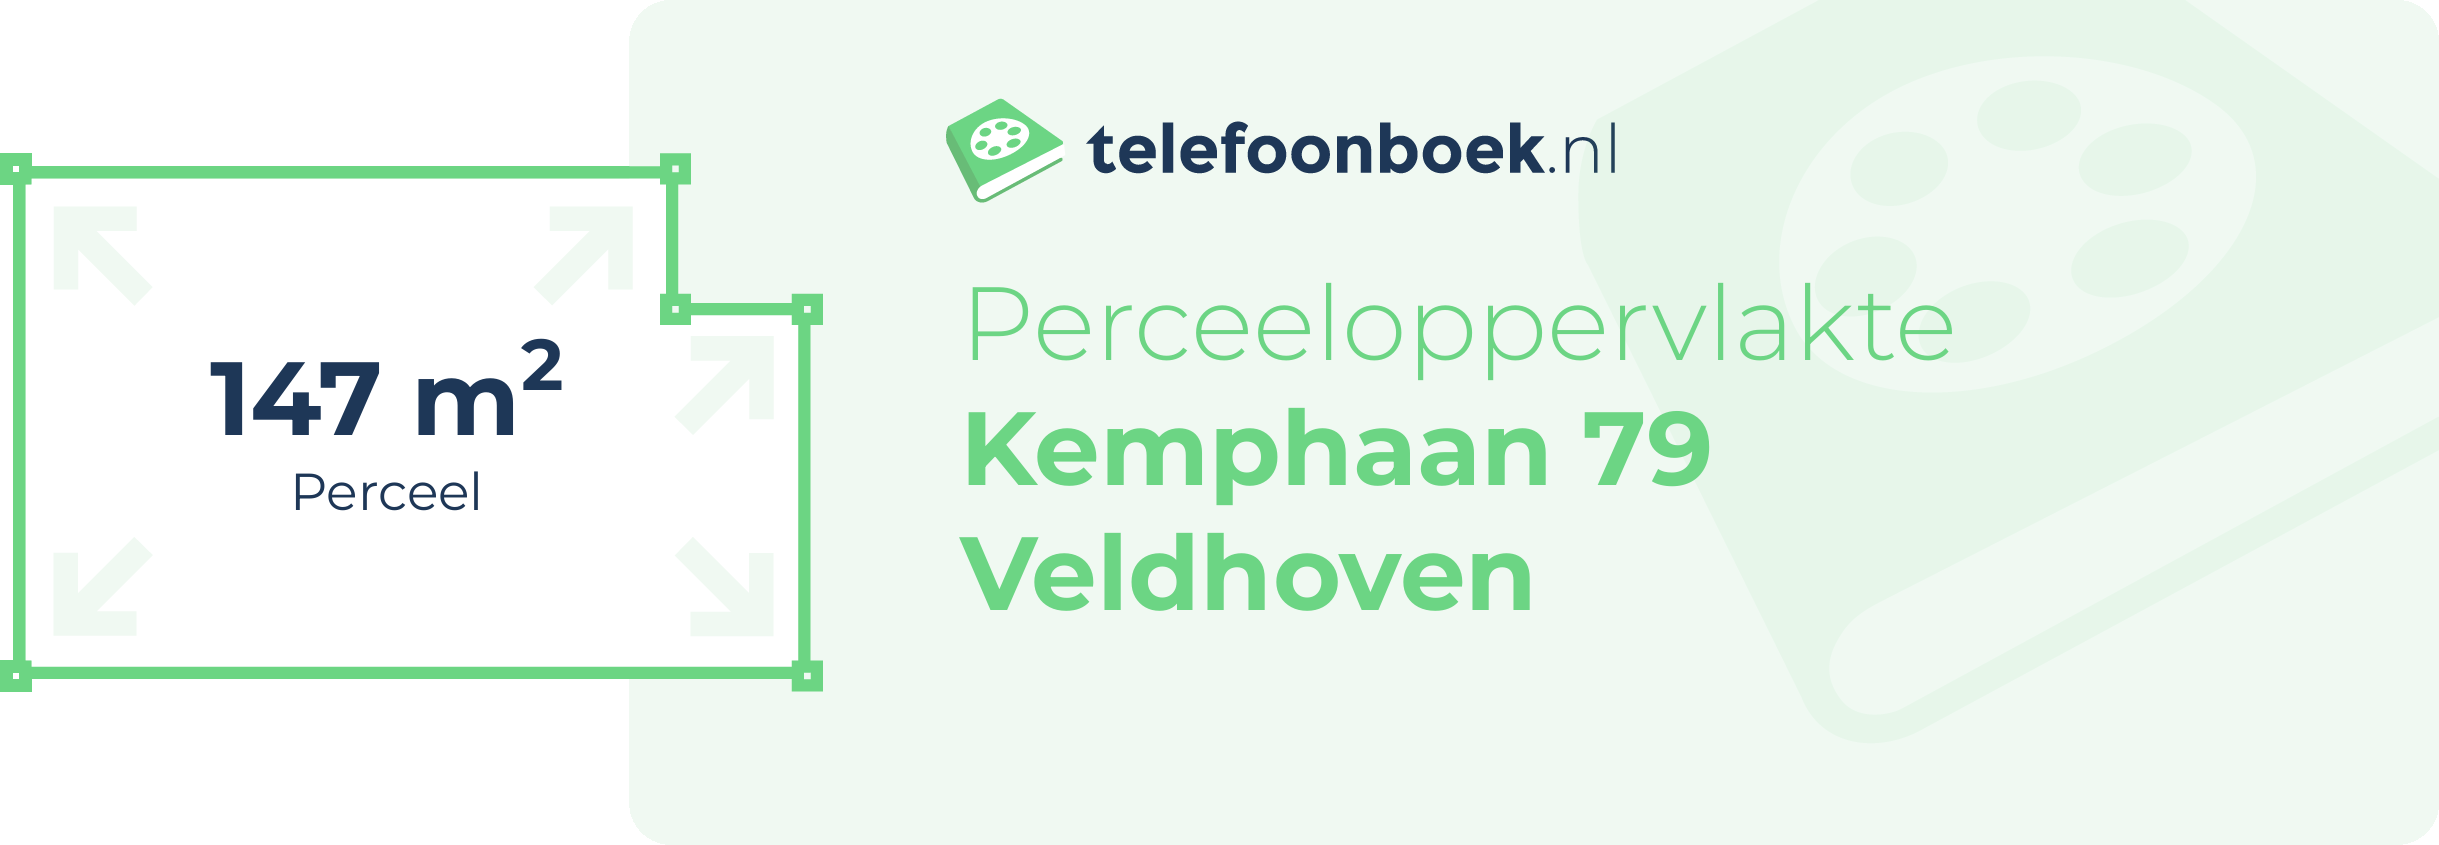 Perceeloppervlakte Kemphaan 79 Veldhoven